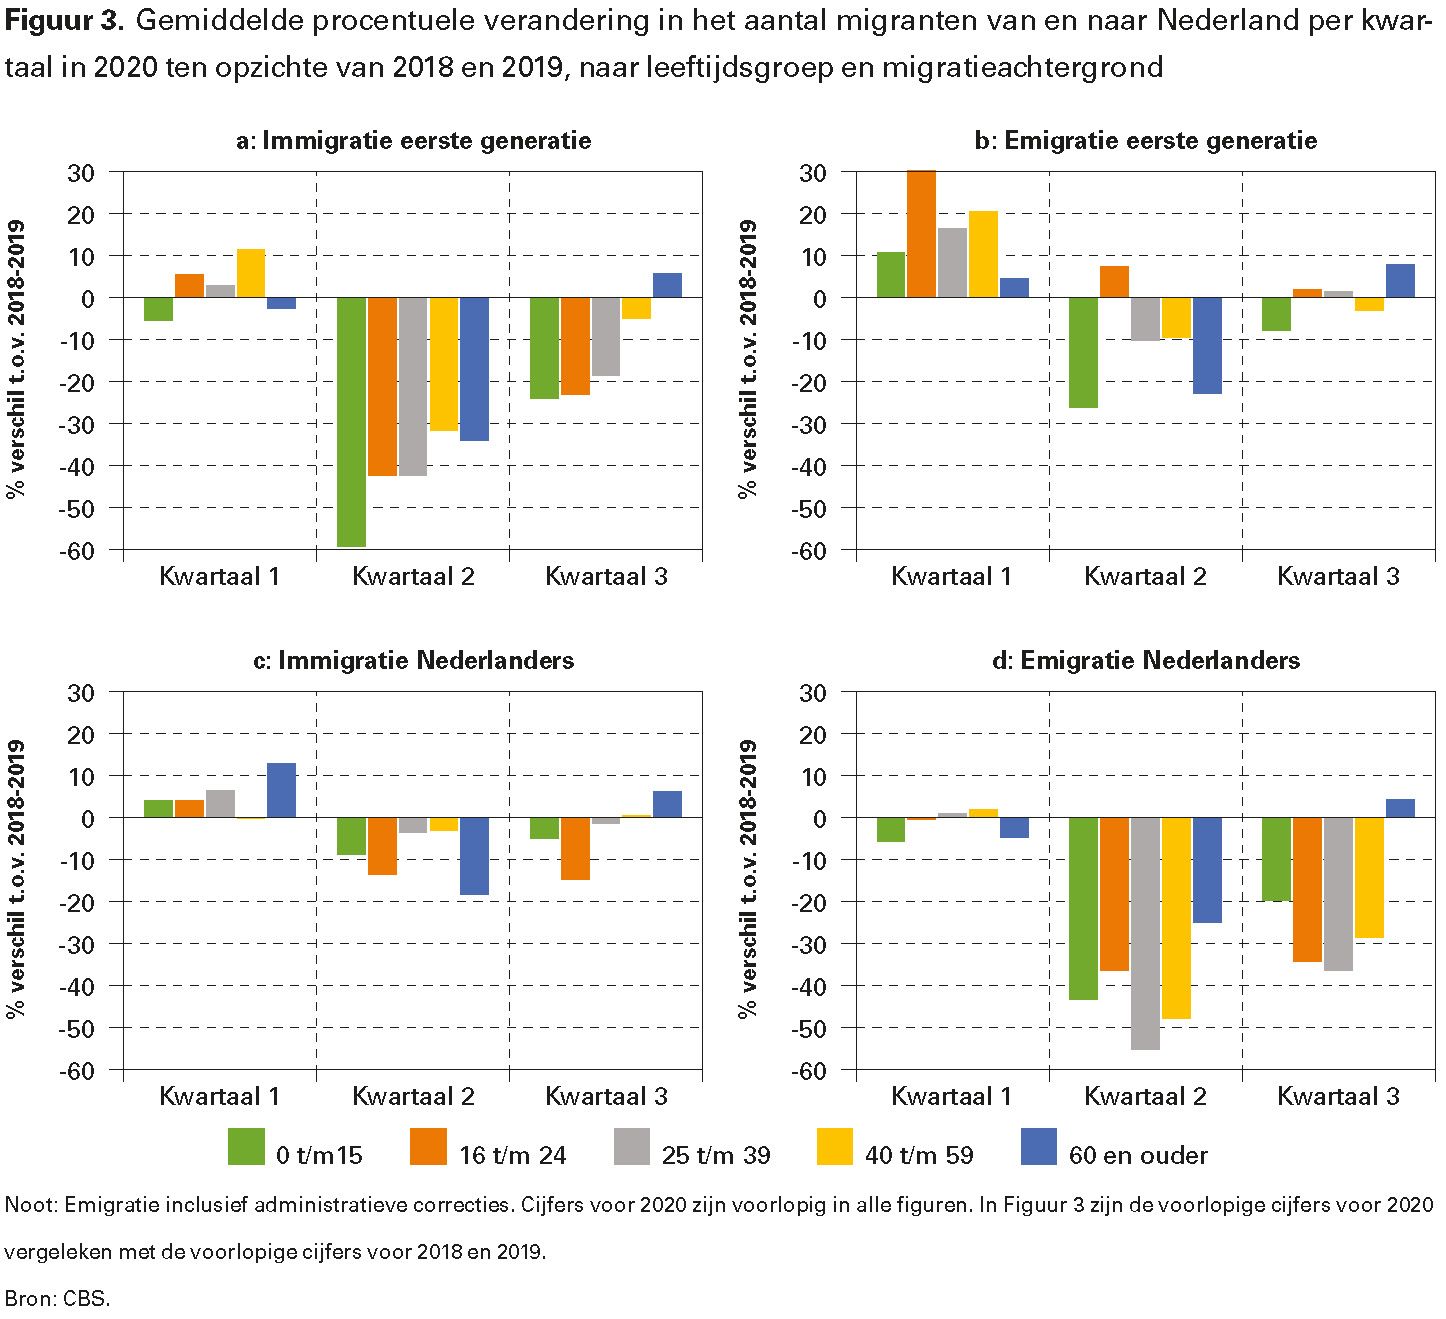 Figuur 3. Gemiddelde procentuele verandering in het aantal migranten van en naar Nederland per kwartaal in 2020 ten opzichte van 2018 en 2019, naar leeftijdsgroep en migratieachtergrond